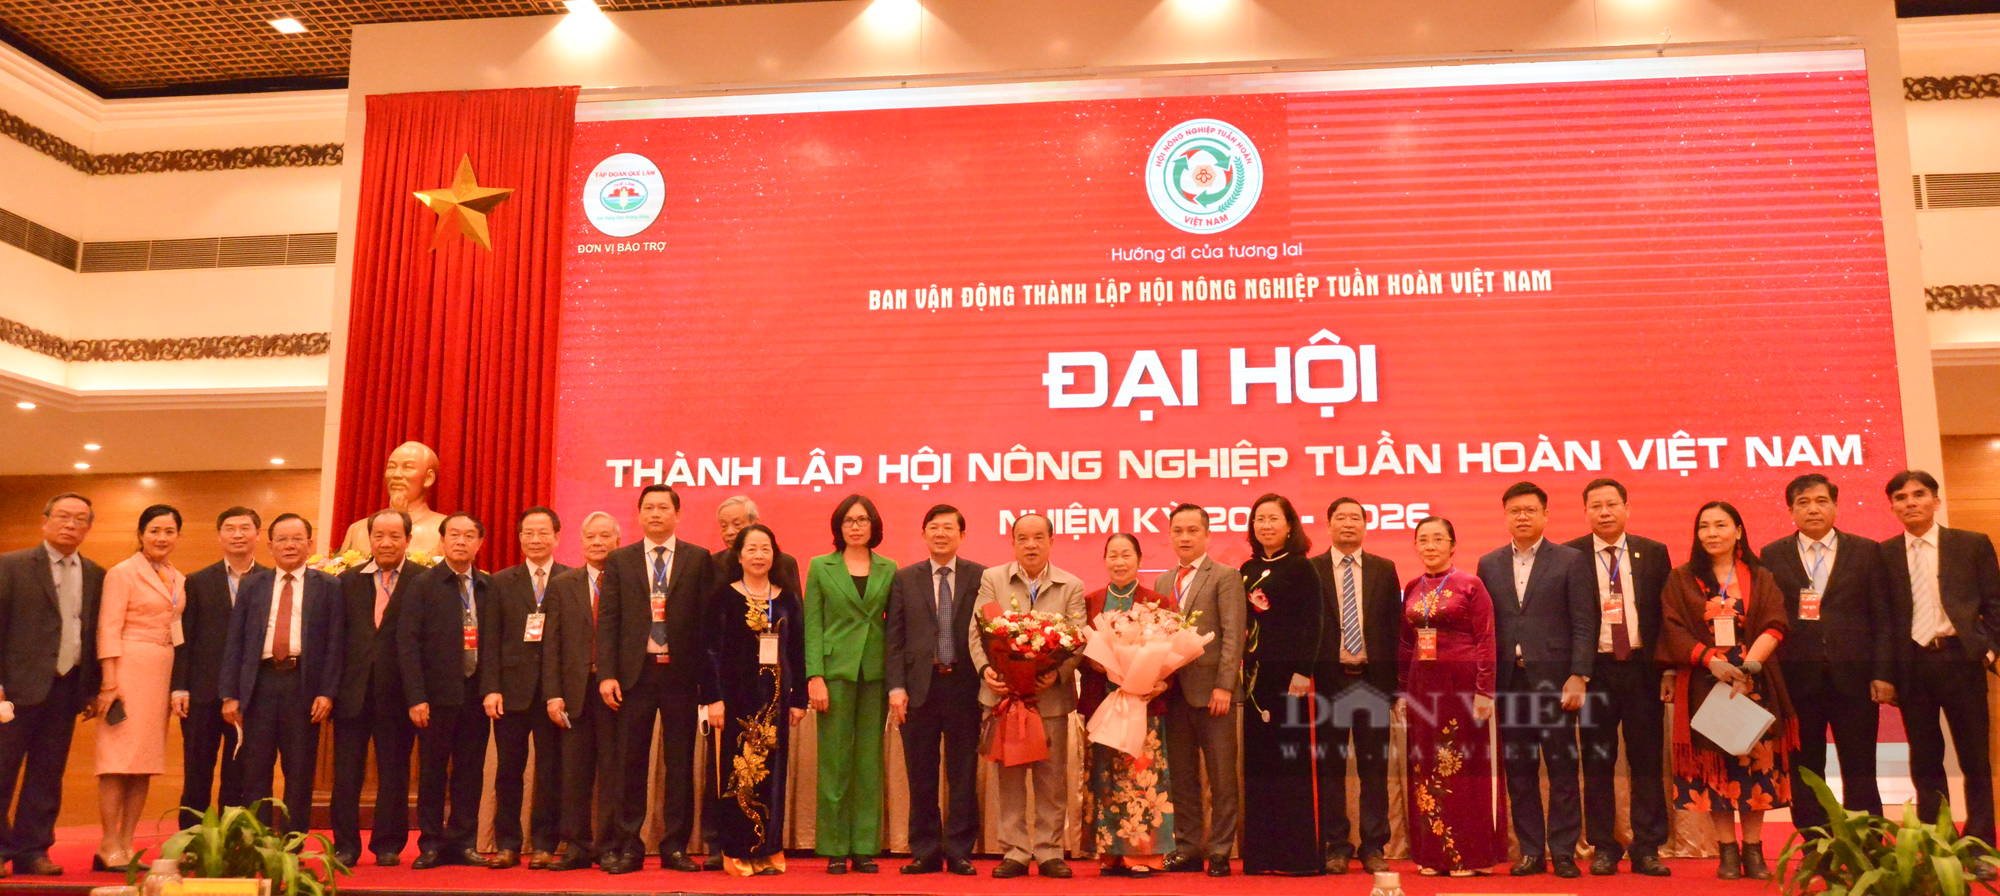 Ông Nguyễn Hồng Lam được bầu làm Chủ tịch Hội Nông nghiệp tuần hoàn Việt Nam - Ảnh 4.